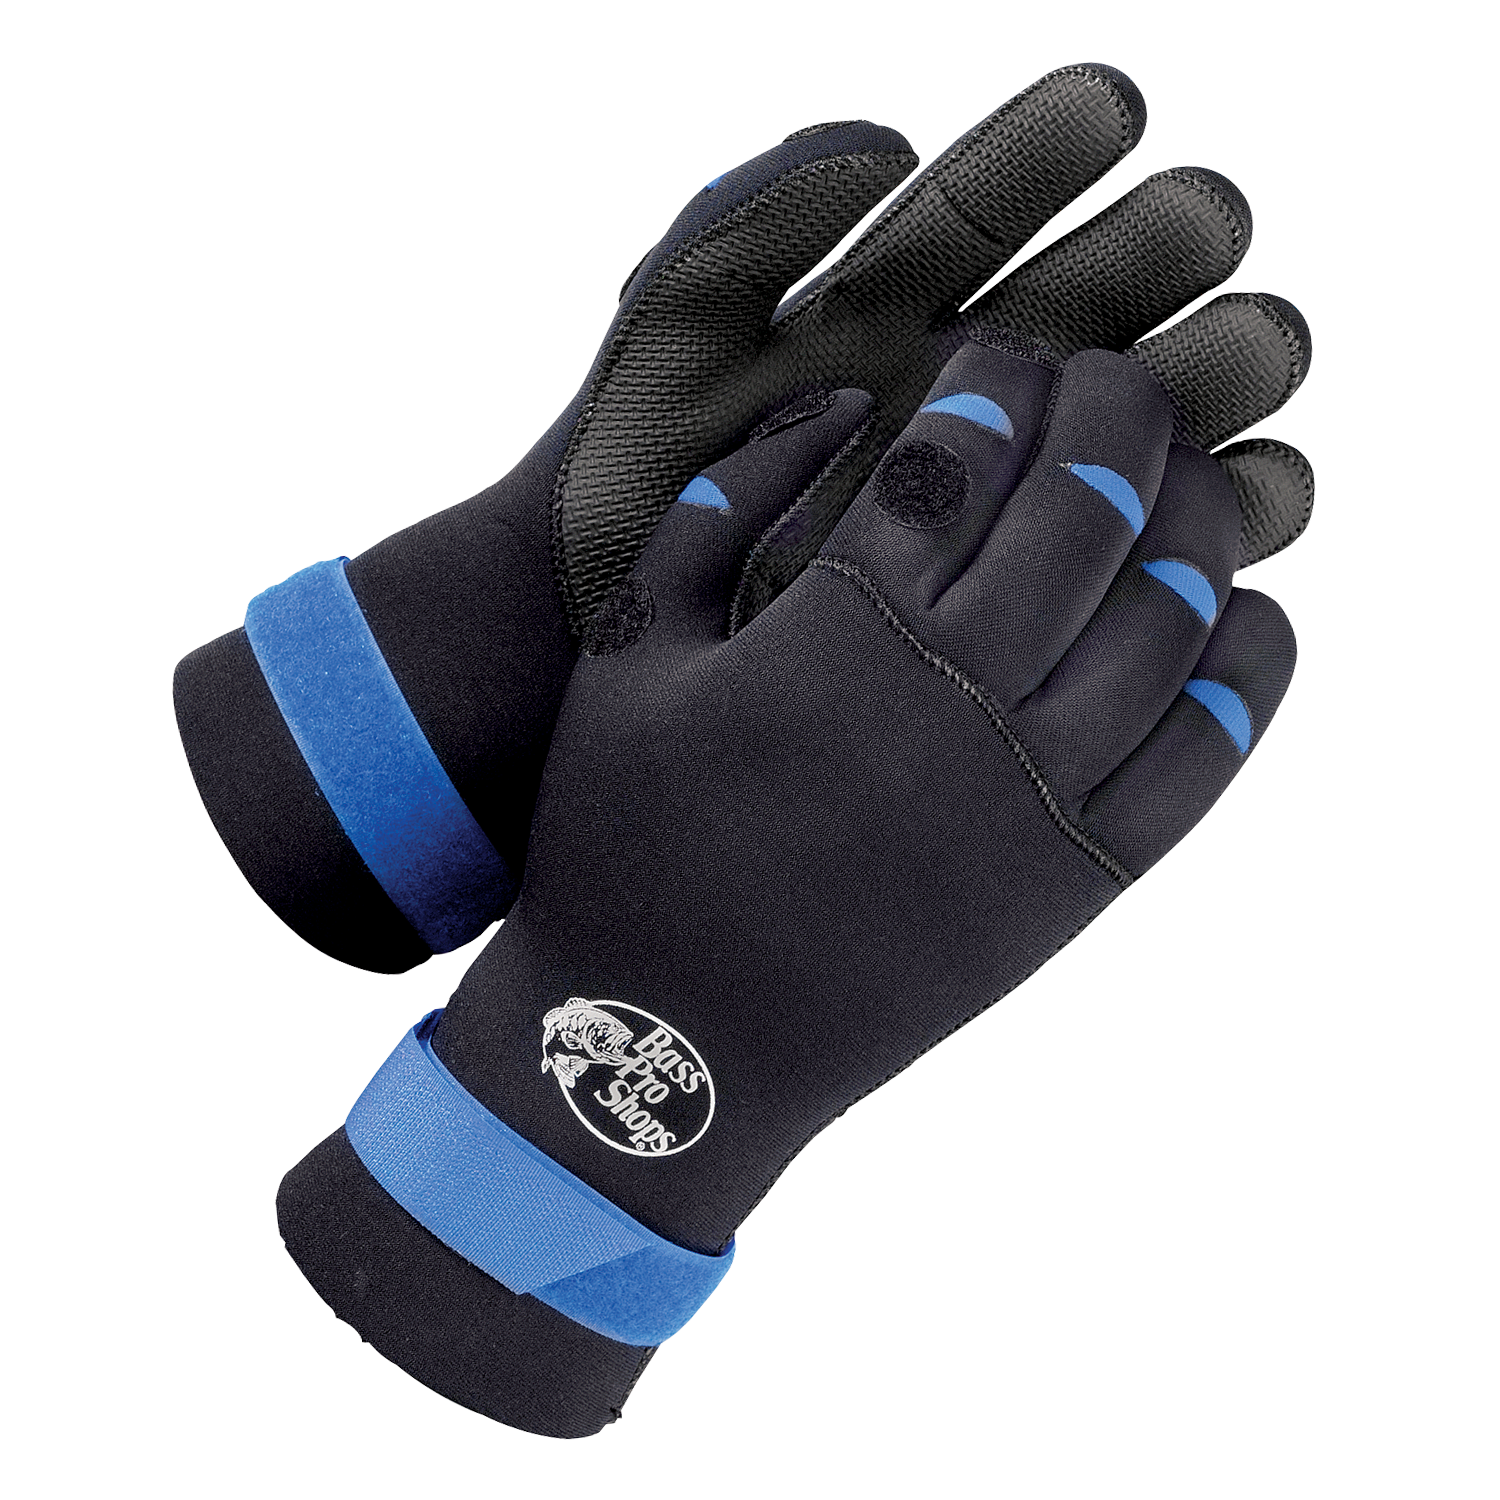 Bass Pro Shops Neoprene Fishing Gloves - Black